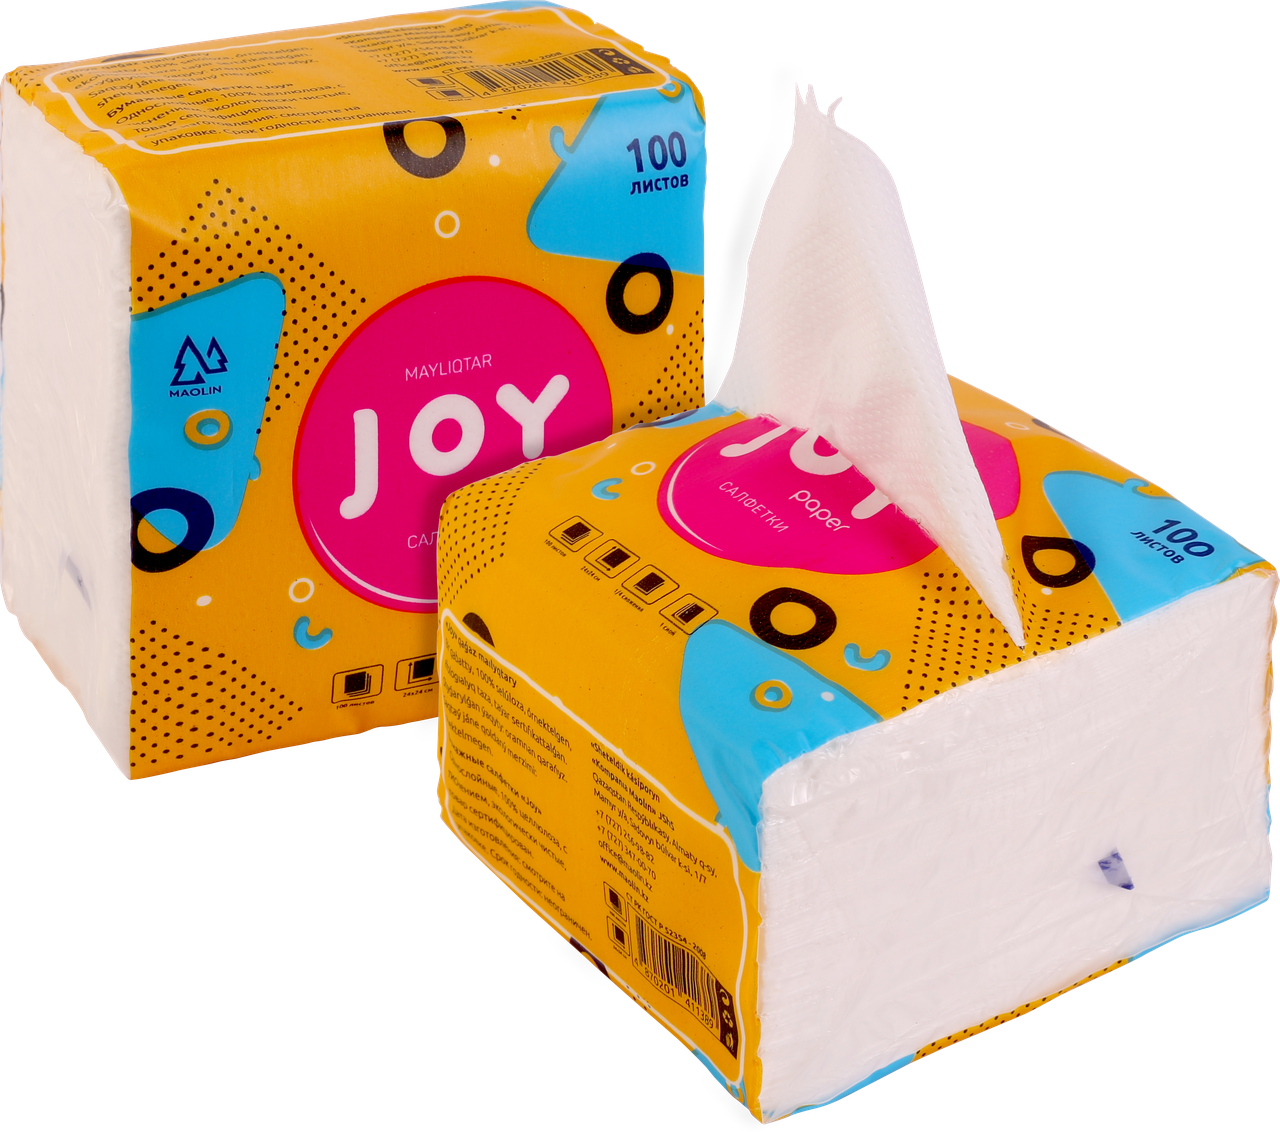 Салфетки целлюлозные "Joy" - 100 листов